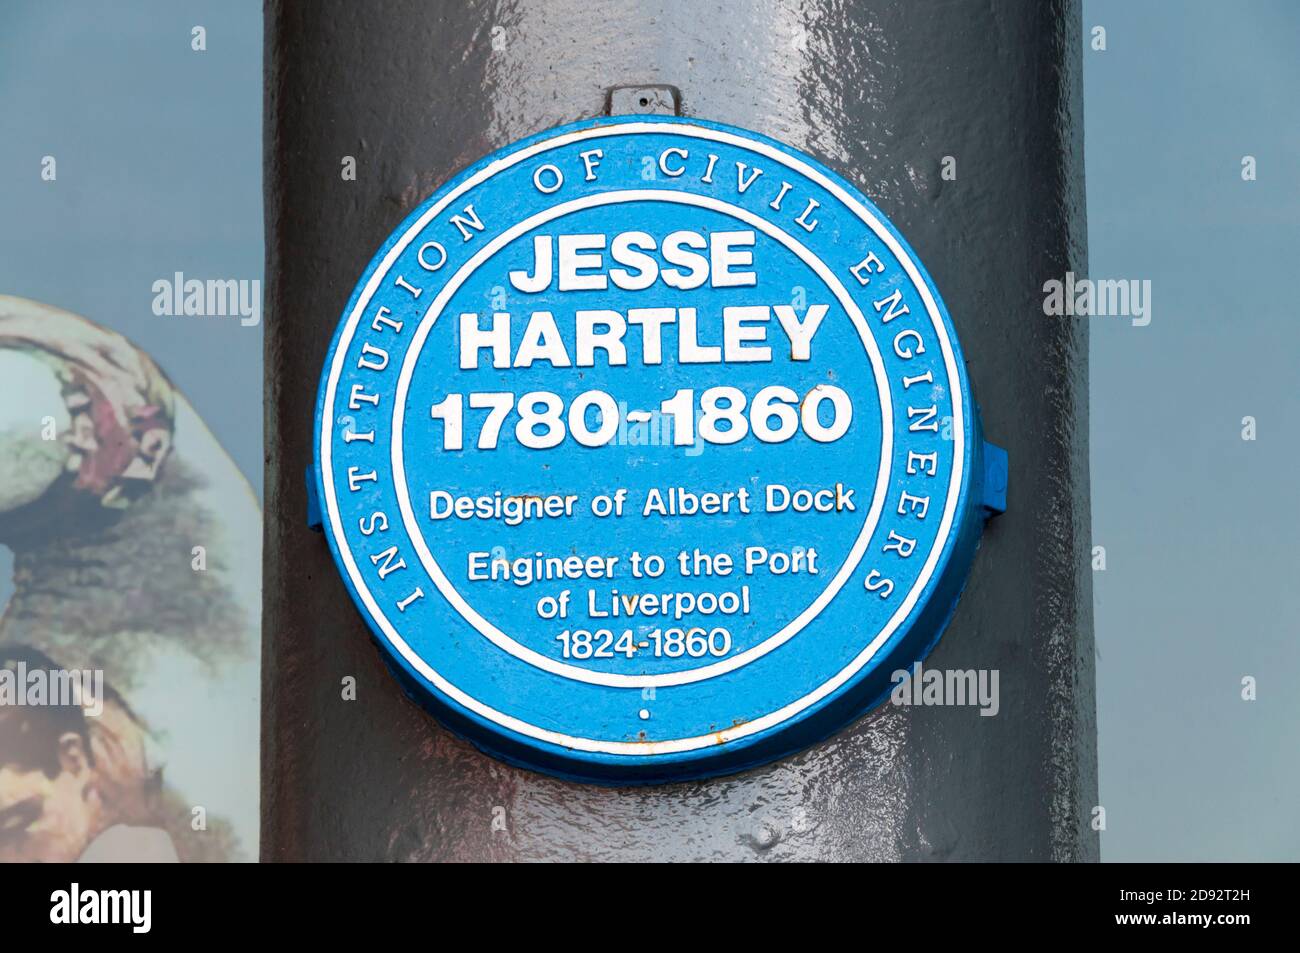 La plaque bleue de l'institution of civil Engineers commémore Jesse Hartley, la créatrice de l'Albert Dock à Liverpool. Banque D'Images